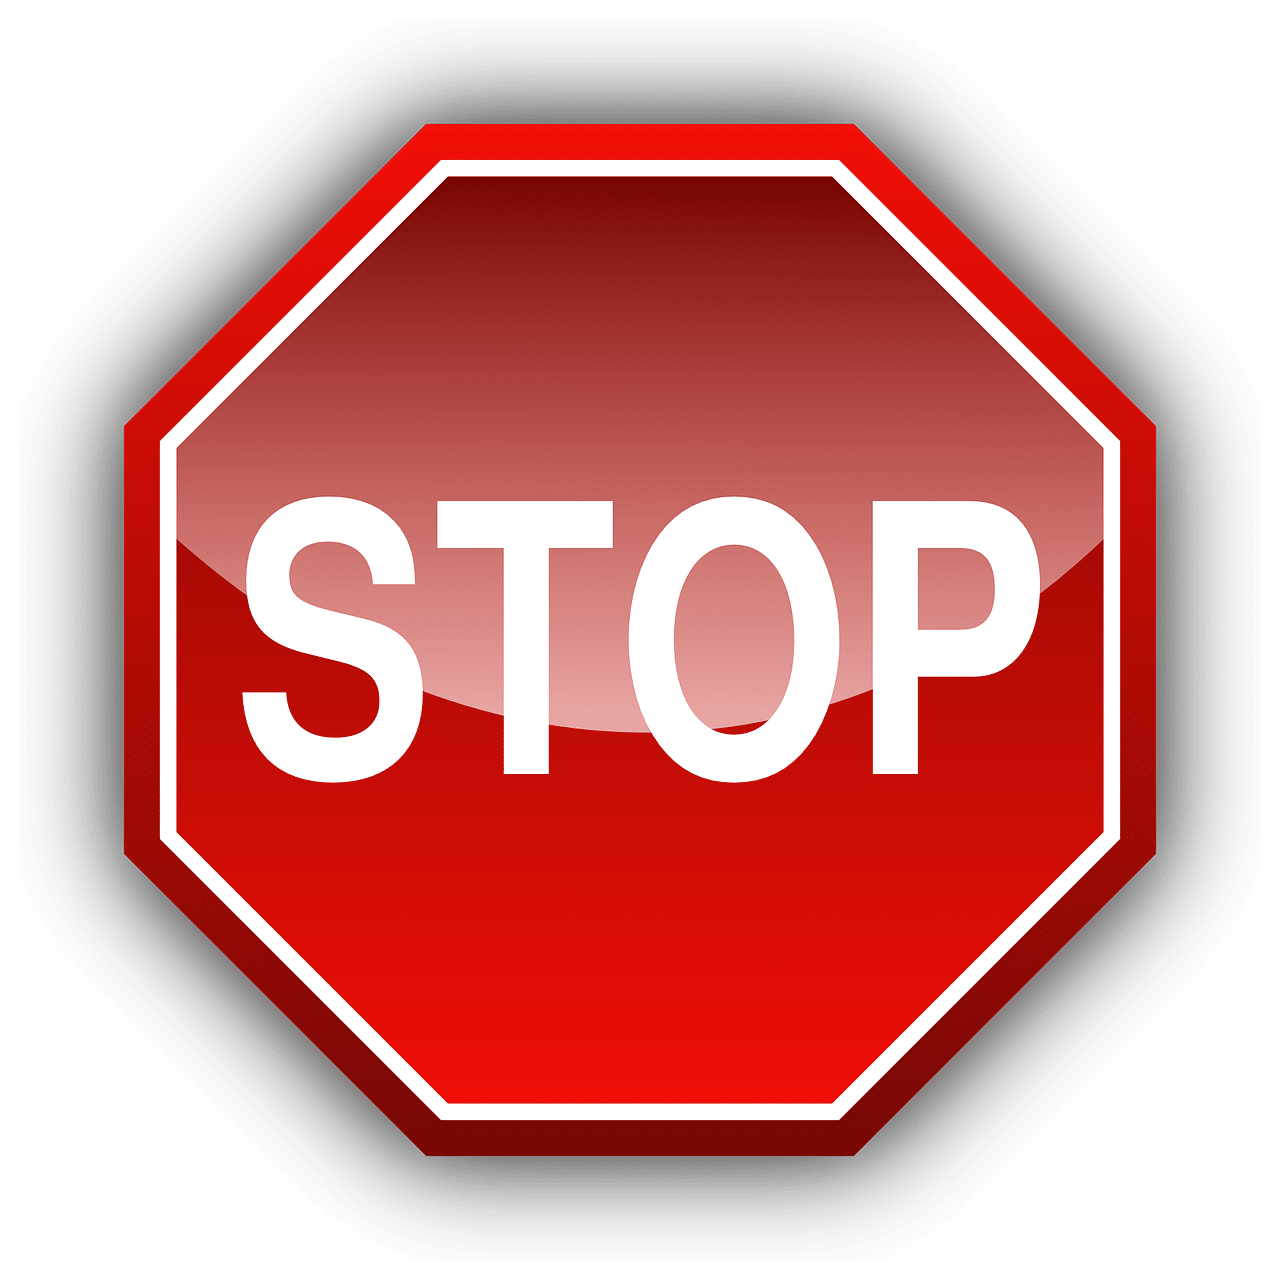 stop sign g9ec07e3da 1280